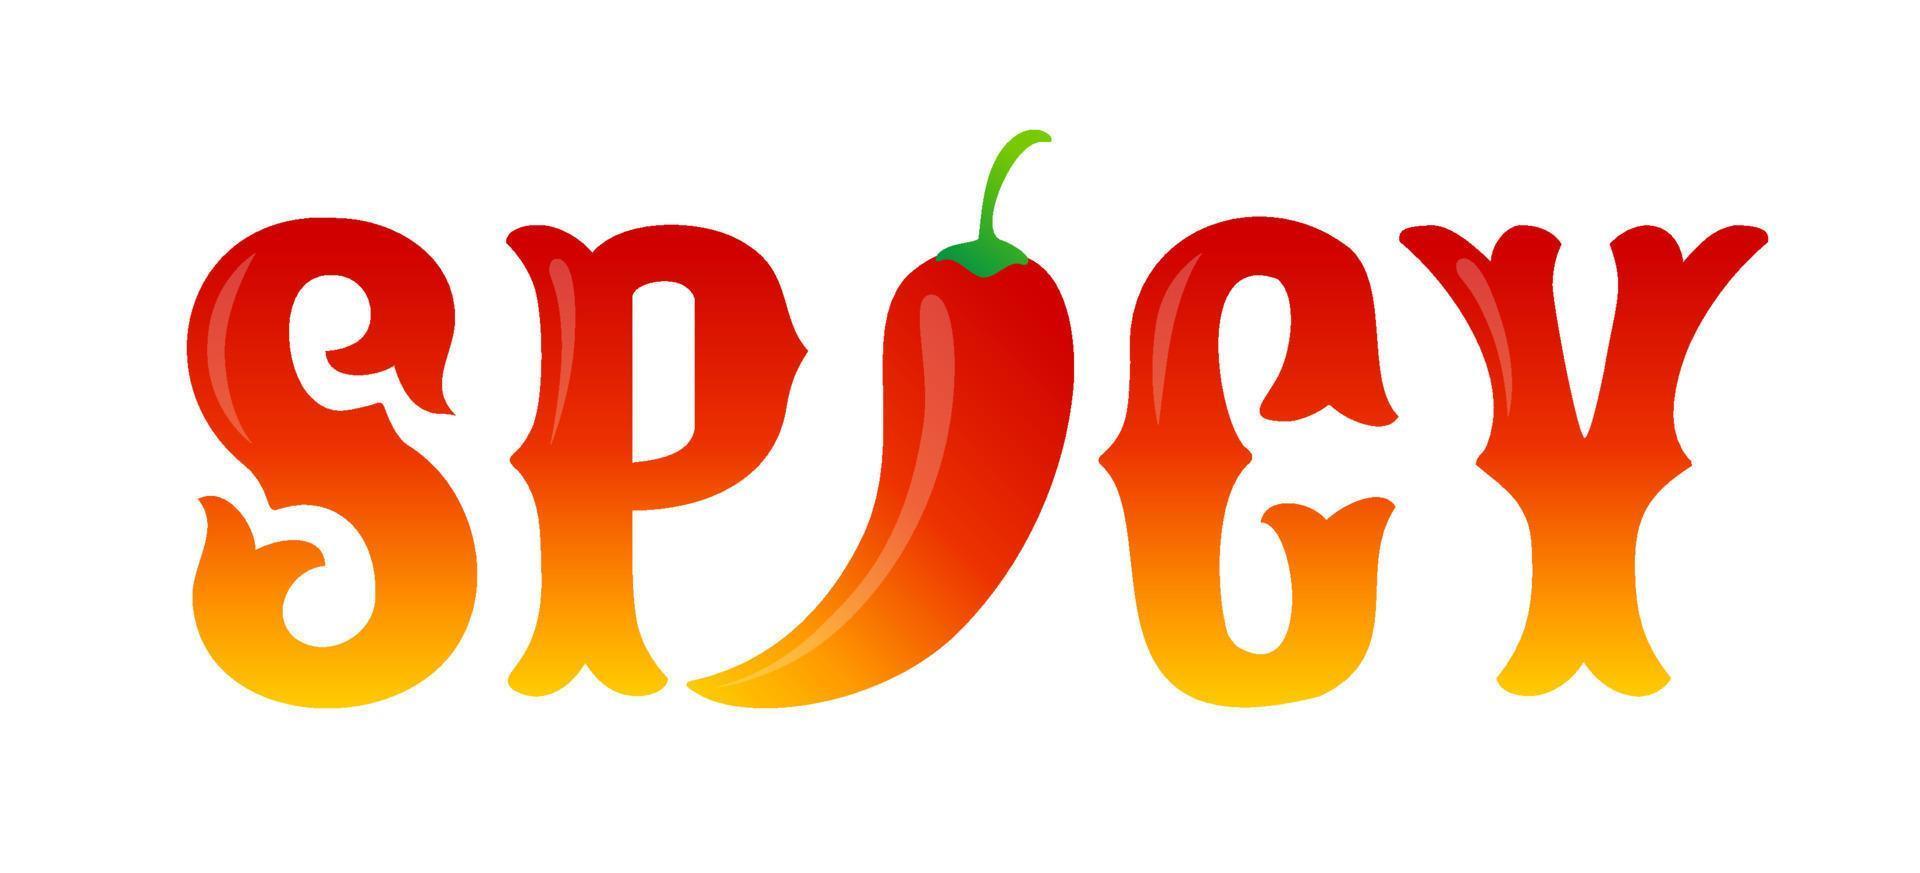 tipografia vetorial com pimenta vermelha. comida apimentada vetor